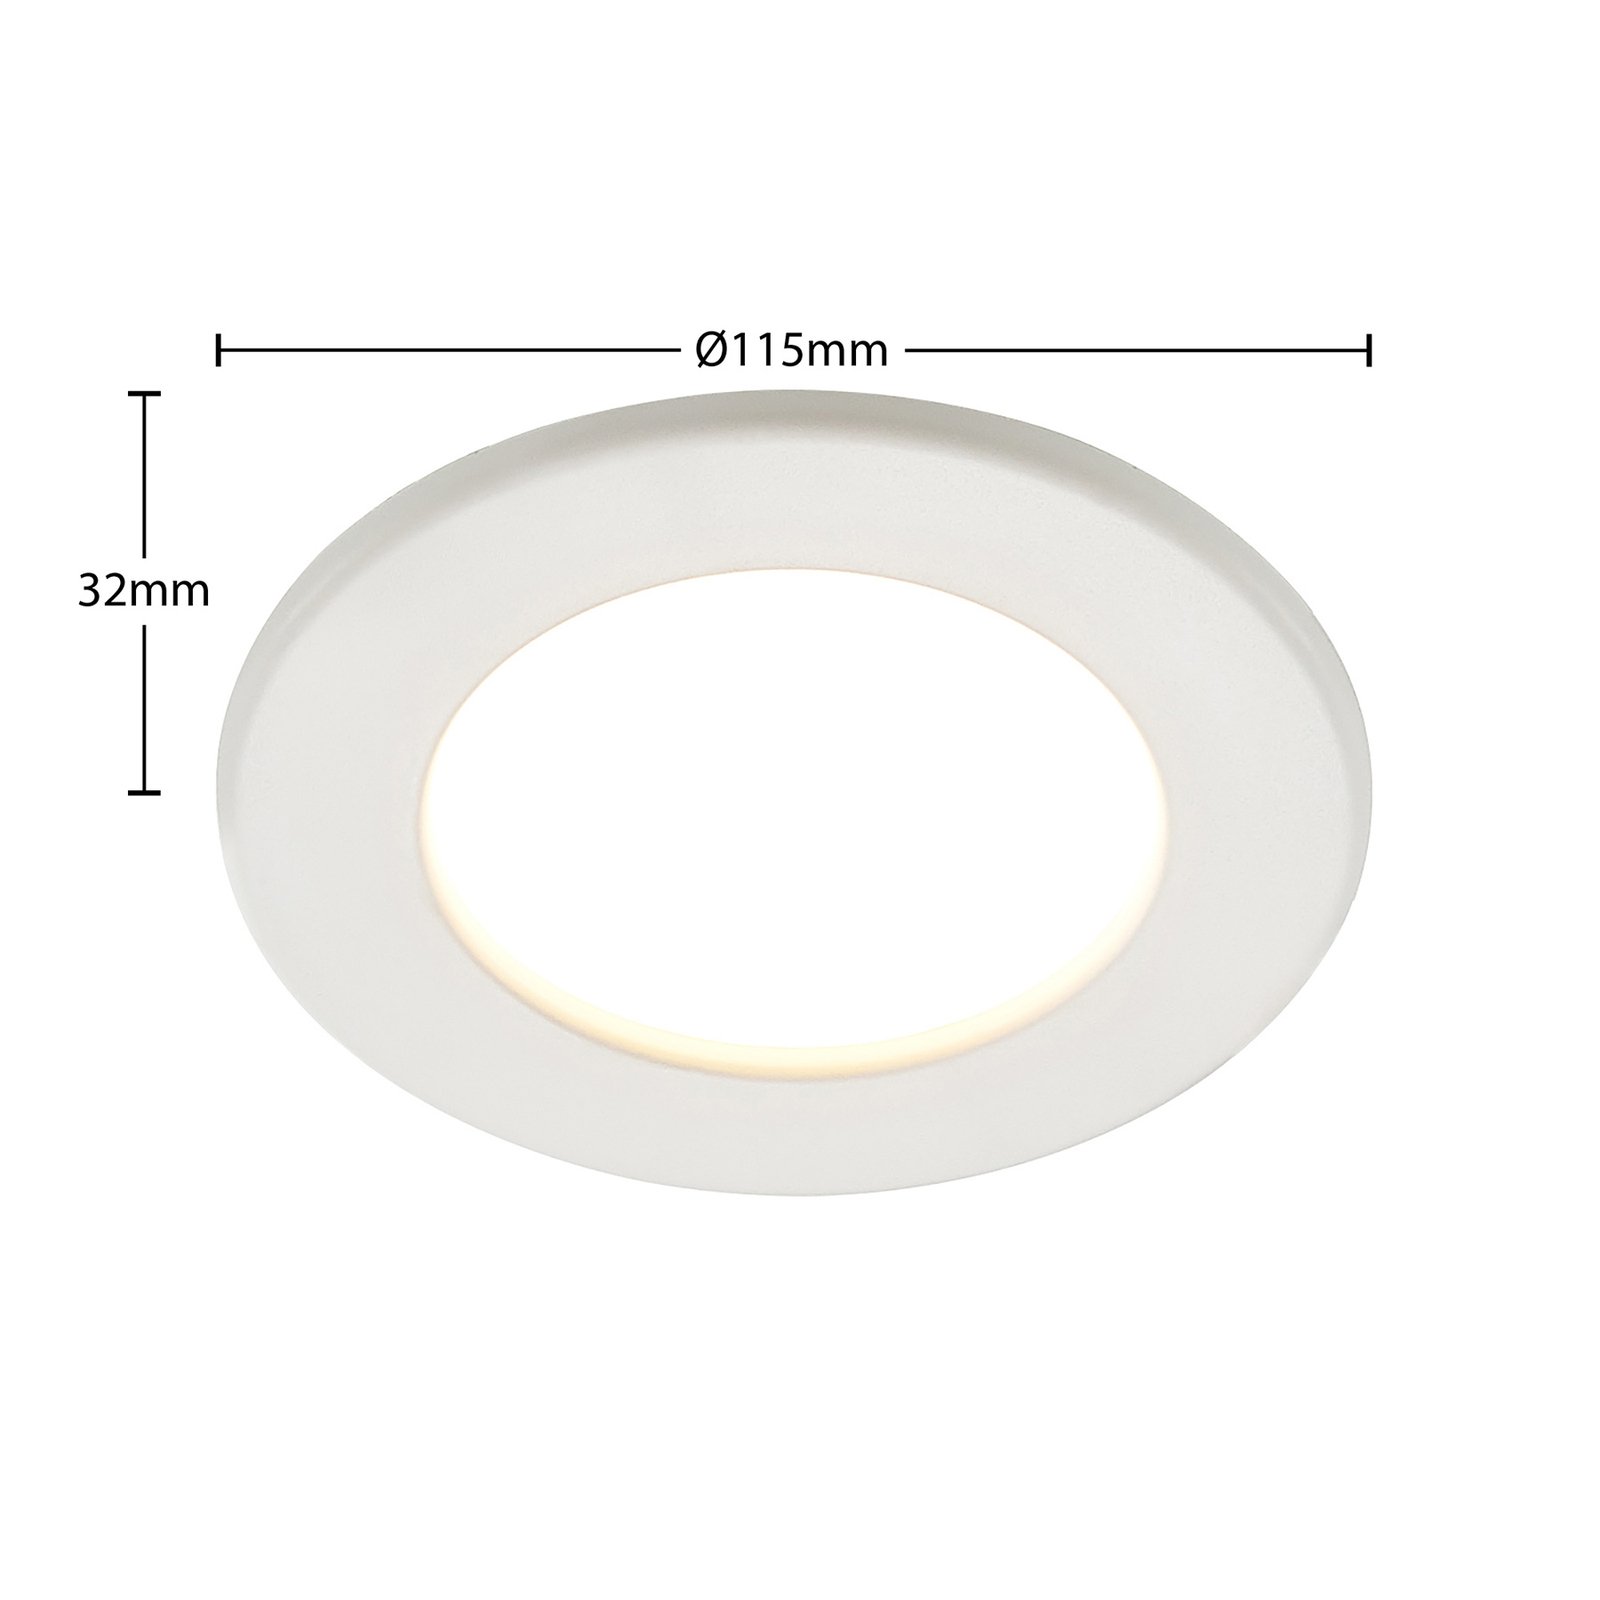 Prios lampe encastrable LED Cadance, blanc, 11,5cm, 3 pièces, intensité